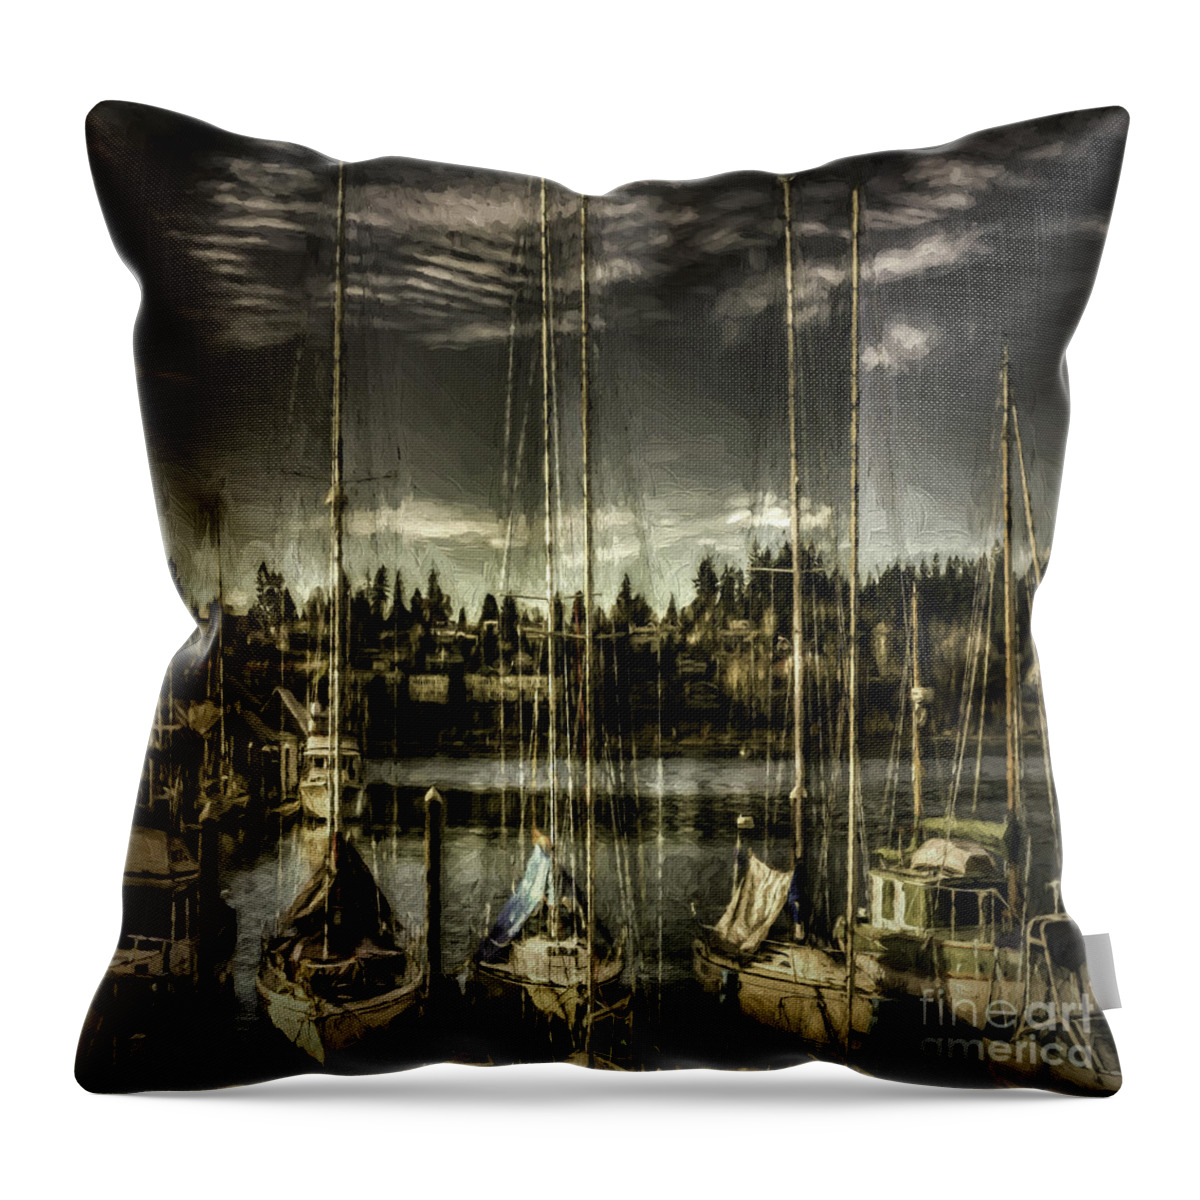 Sailboats Throw Pillow featuring the digital art Evening Mood by Jean OKeeffe Macro Abundance Art